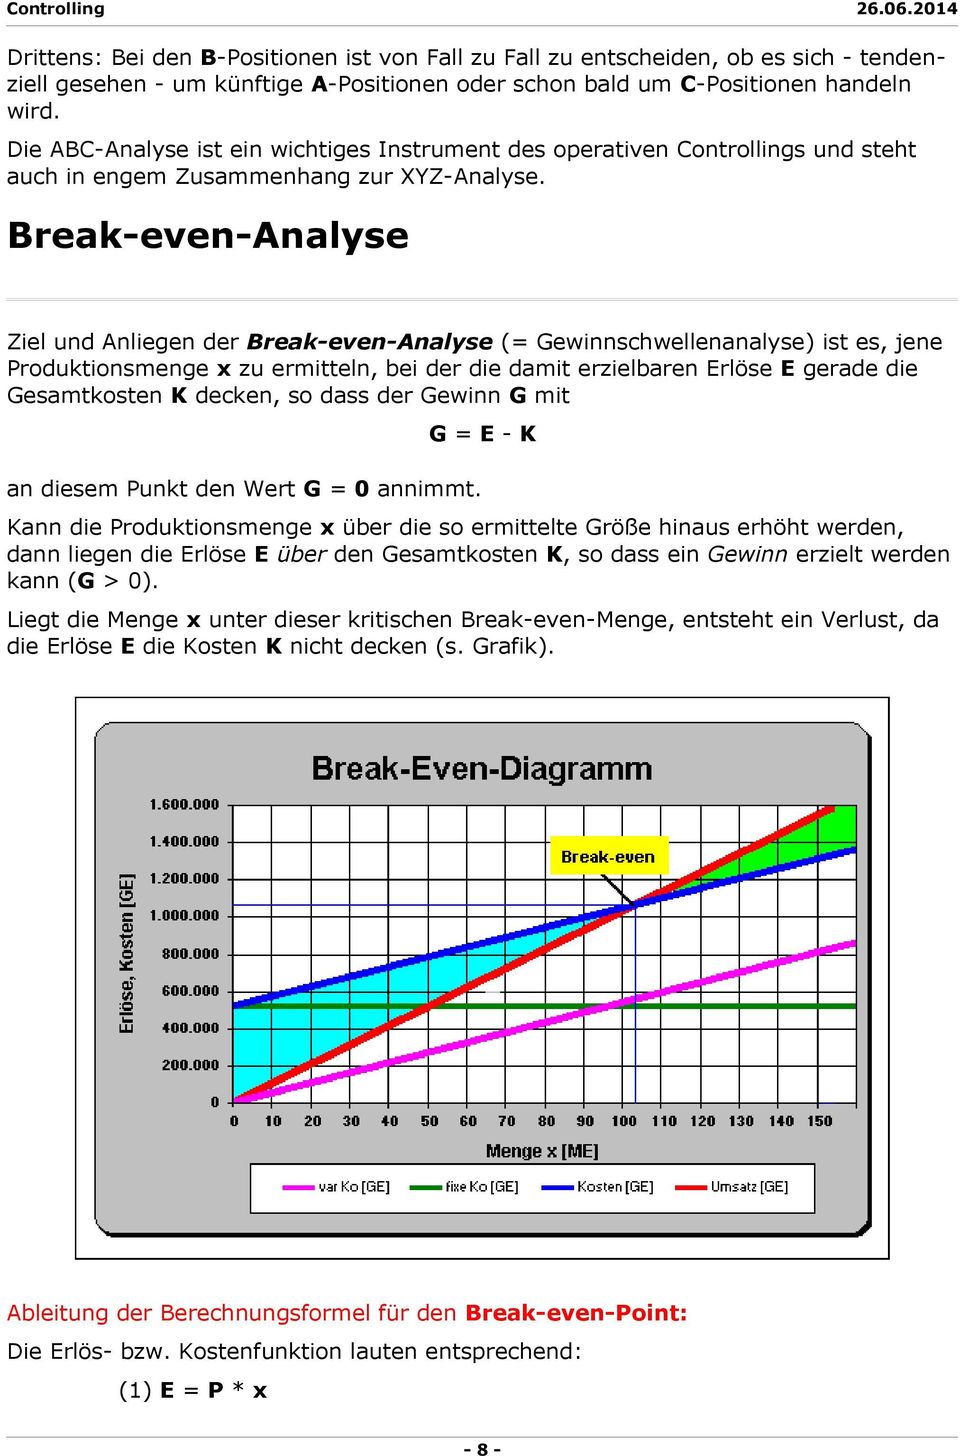 Break-even-Analyse Ziel und Anliegen der Break-even-Analyse (= Gewinnschwellenanalyse) ist es, jene Produktionsmenge x zu ermitteln, bei der die damit erzielbaren Erlöse E gerade die Gesamtkosten K